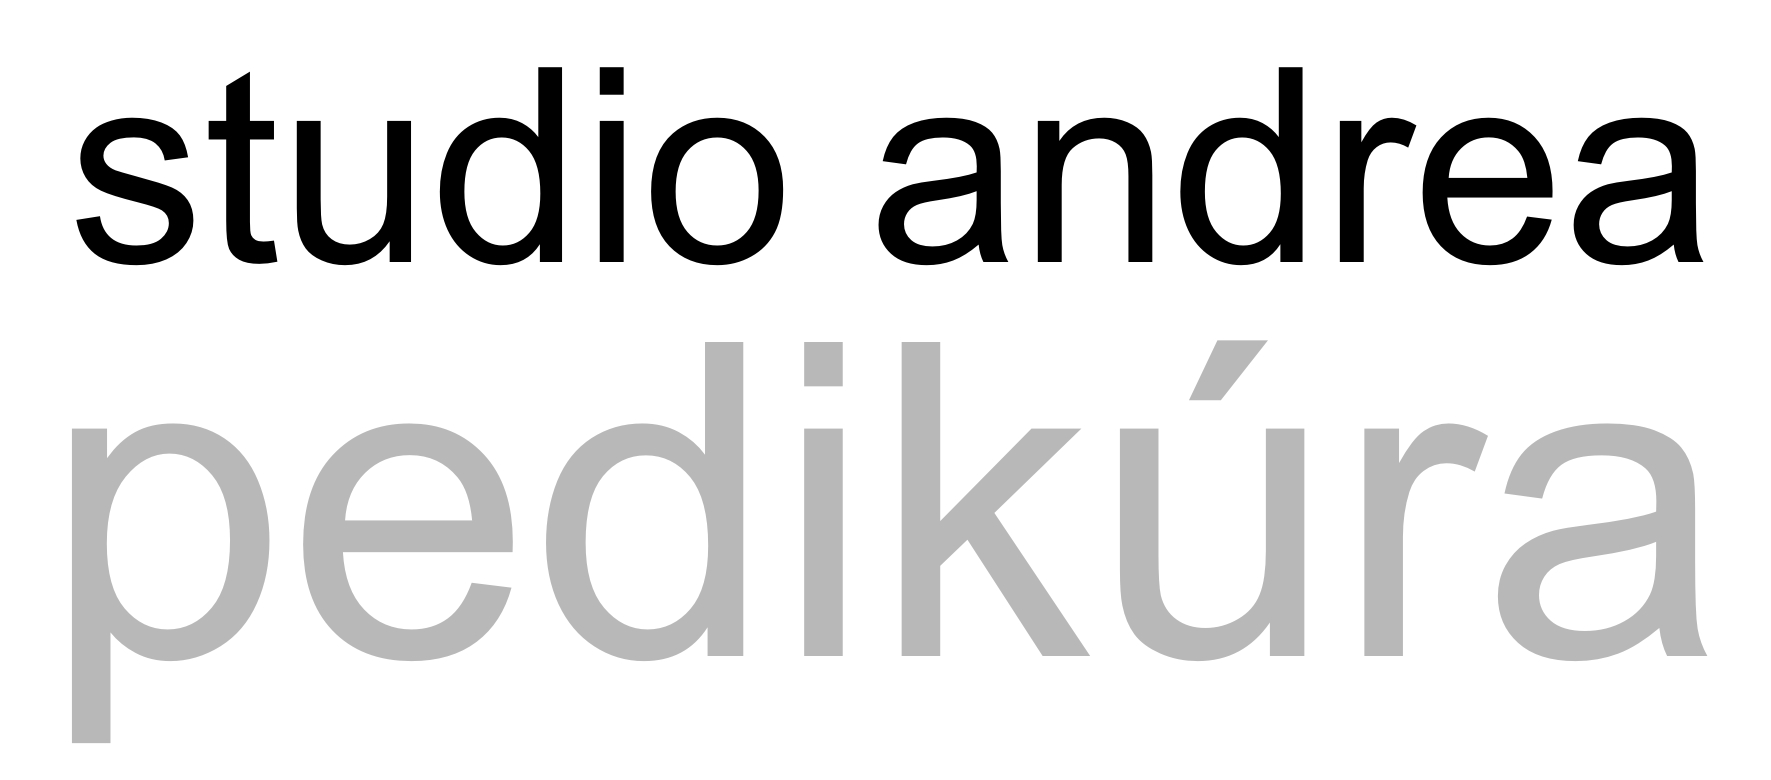 Studio Andrea - Pedikúra & Manikúra